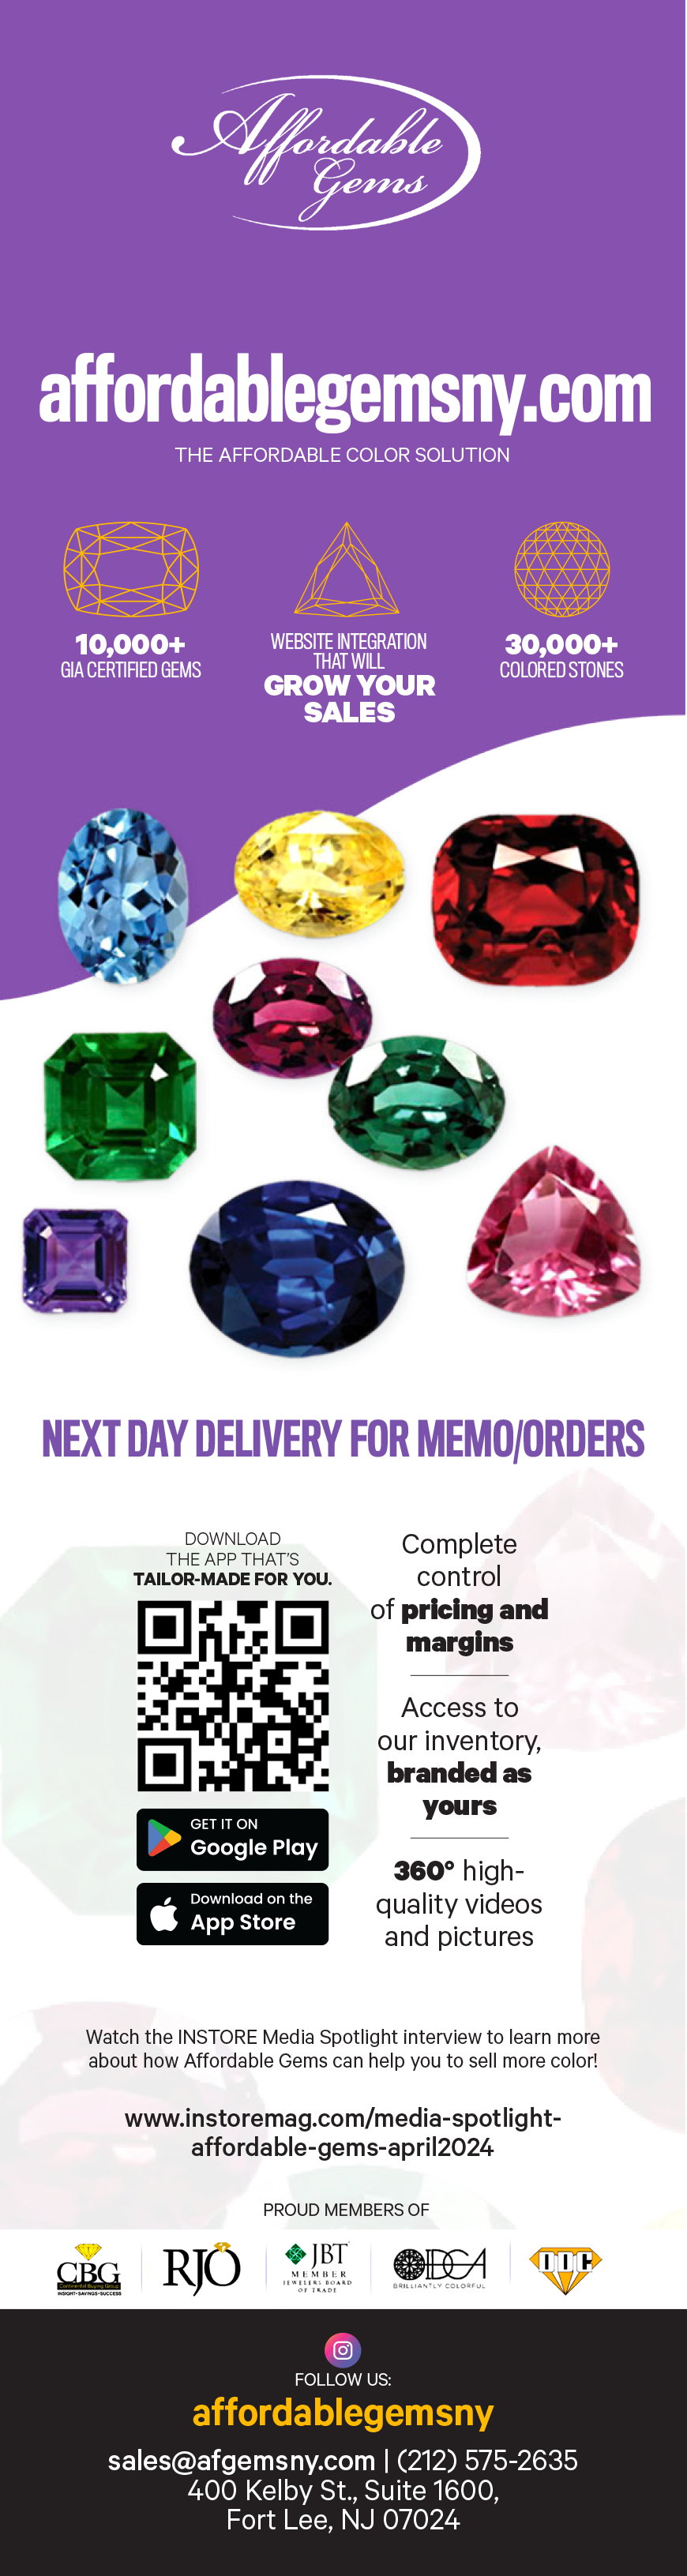 Affordable Gems Media Spotlight